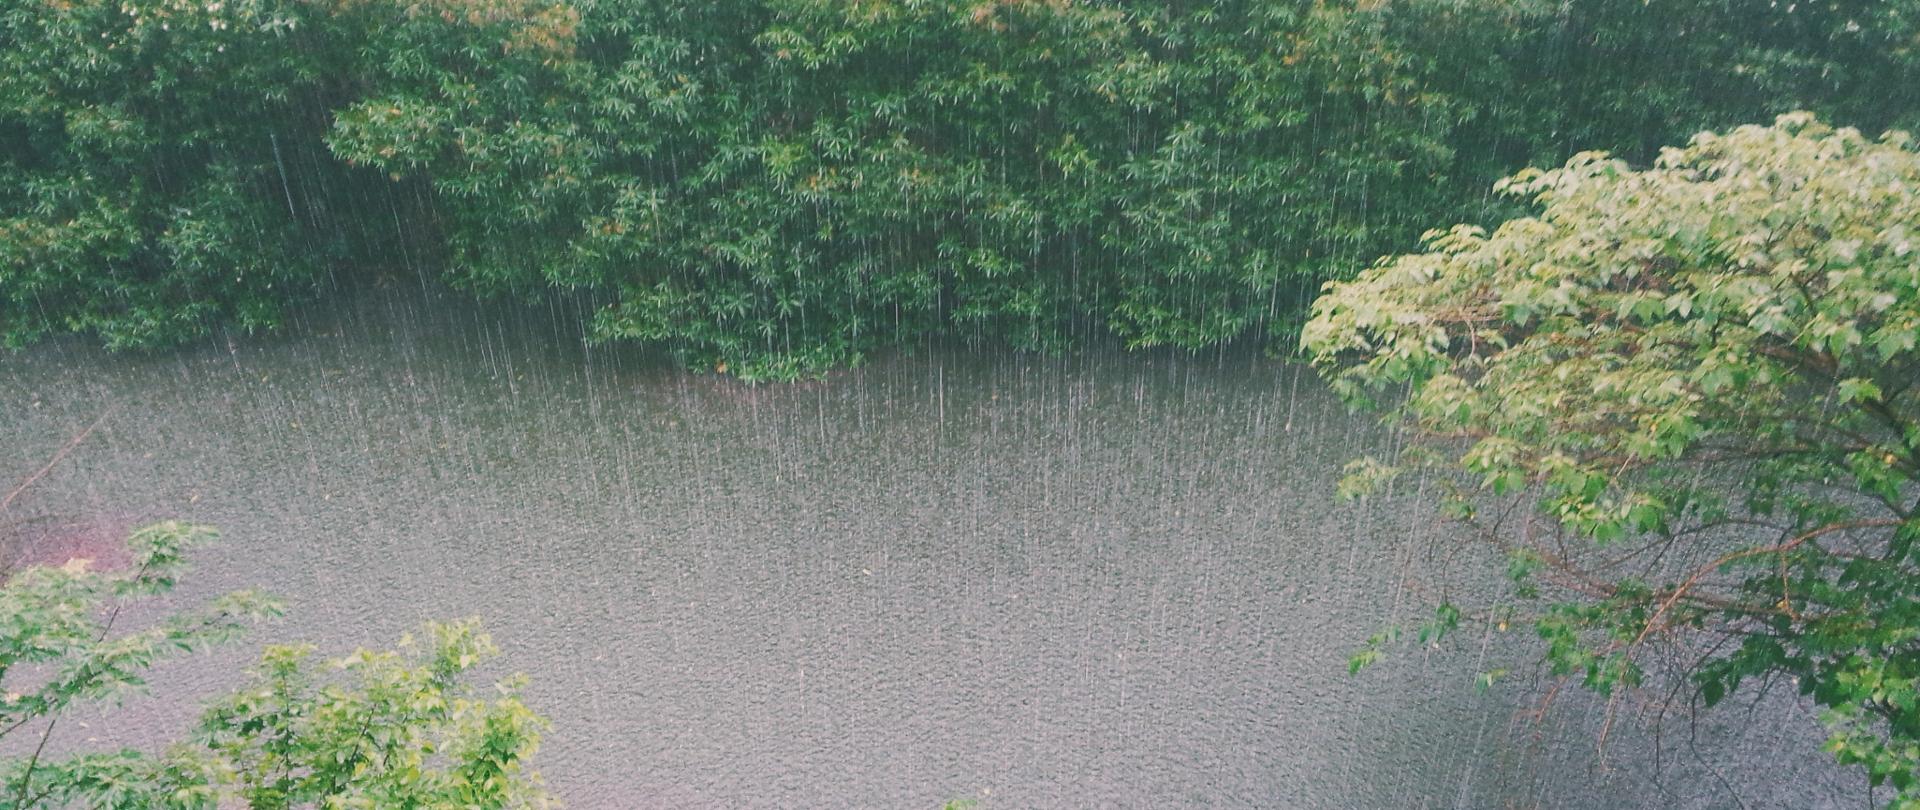 Zdjęcie przedstawia rzekę, nad którą bardzo intensywnie pada deszcz.